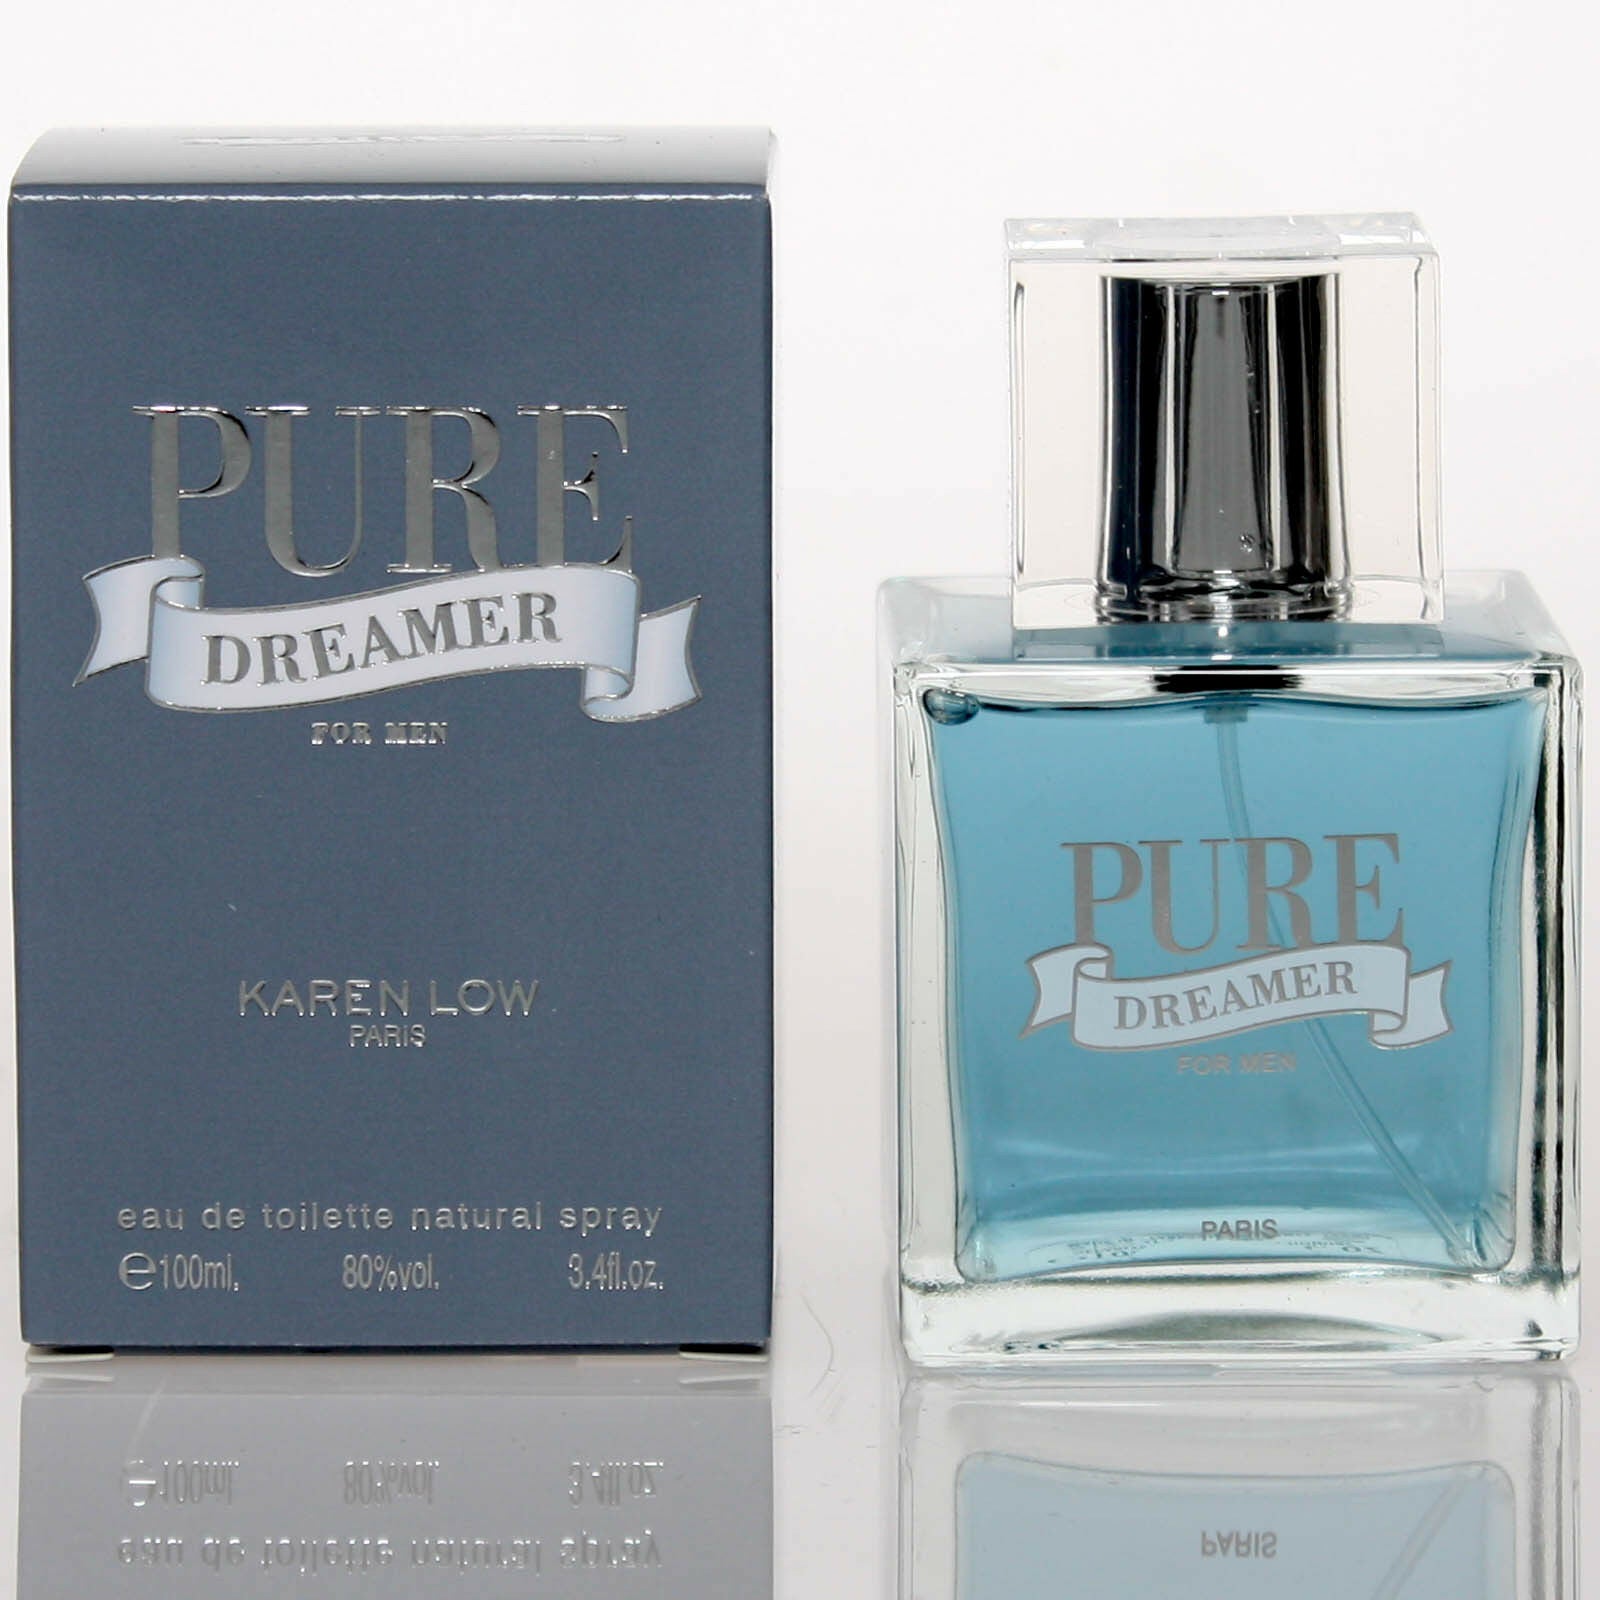 Pure Dreamer by Karen Low 3.4 oz Eau de Toilette Spray for Men